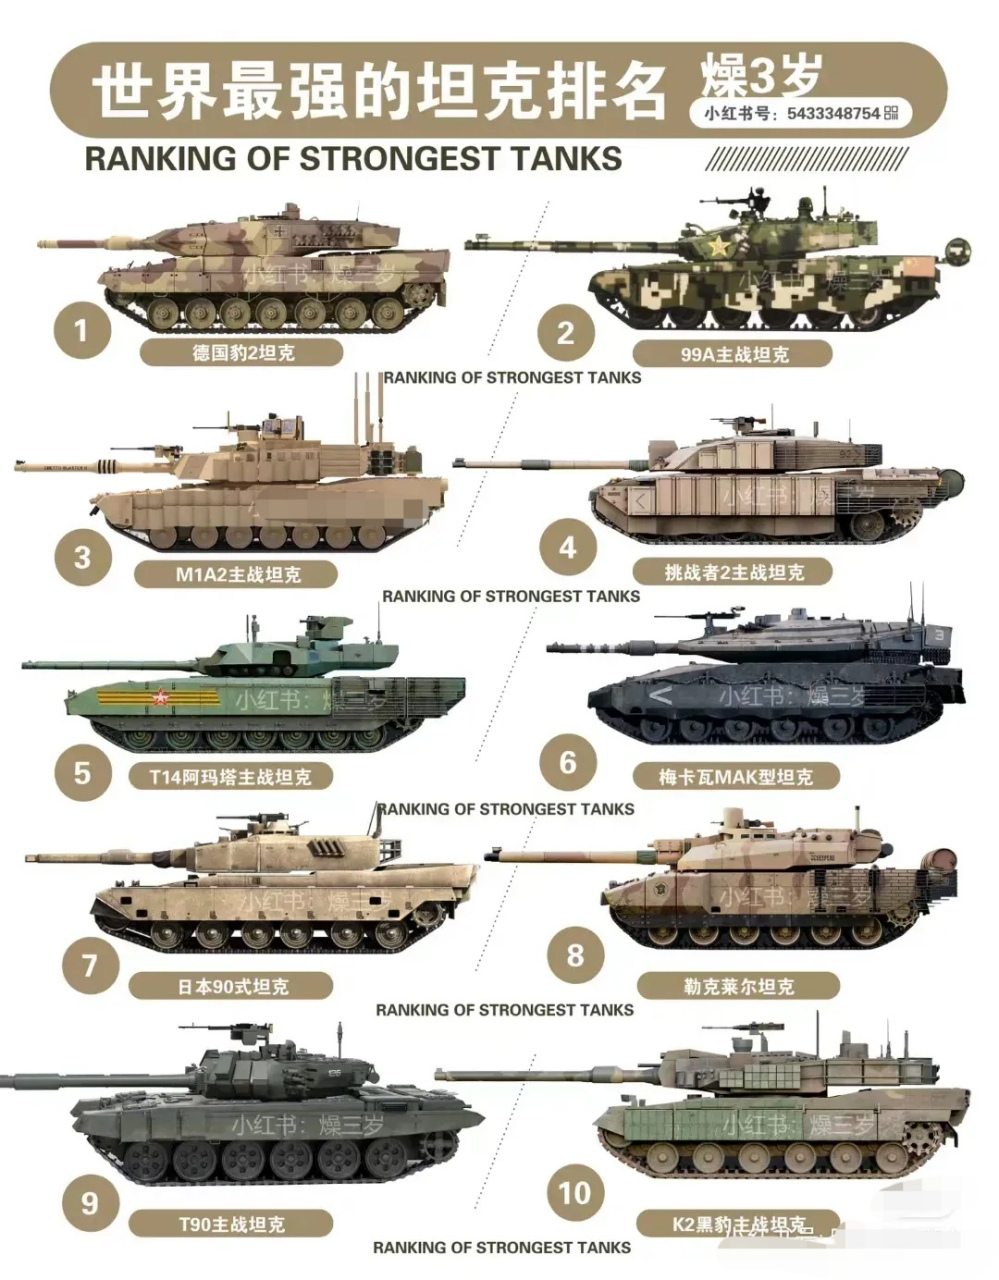 世界最强坦克排名 1德国豹2坦克 299a主战坦克 3m1a2主战坦克 4